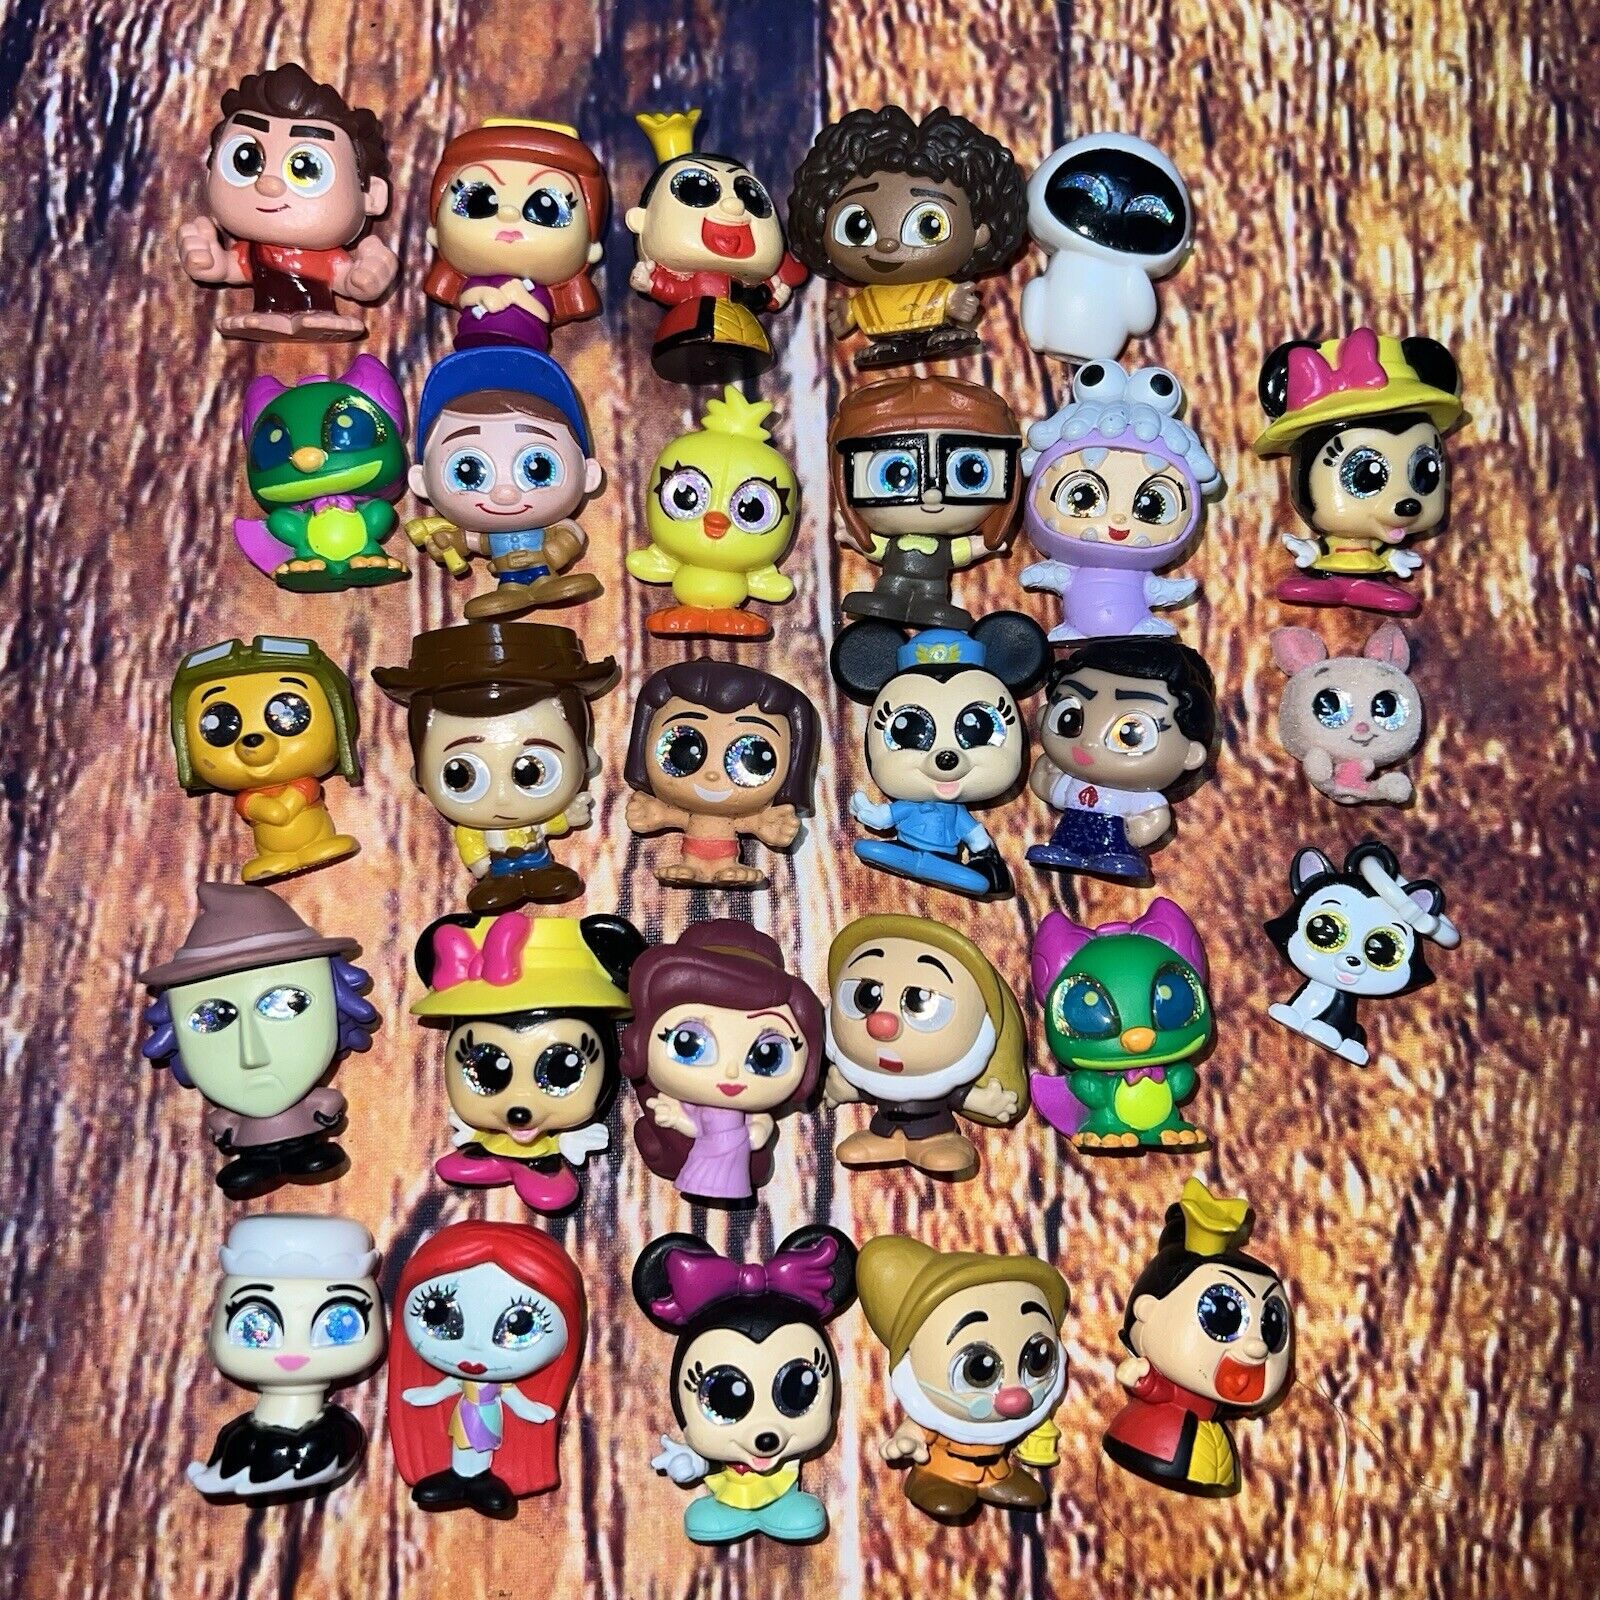 Disney Doorables Mini Figures Collector Bundle Lot of 25 Disney Characters